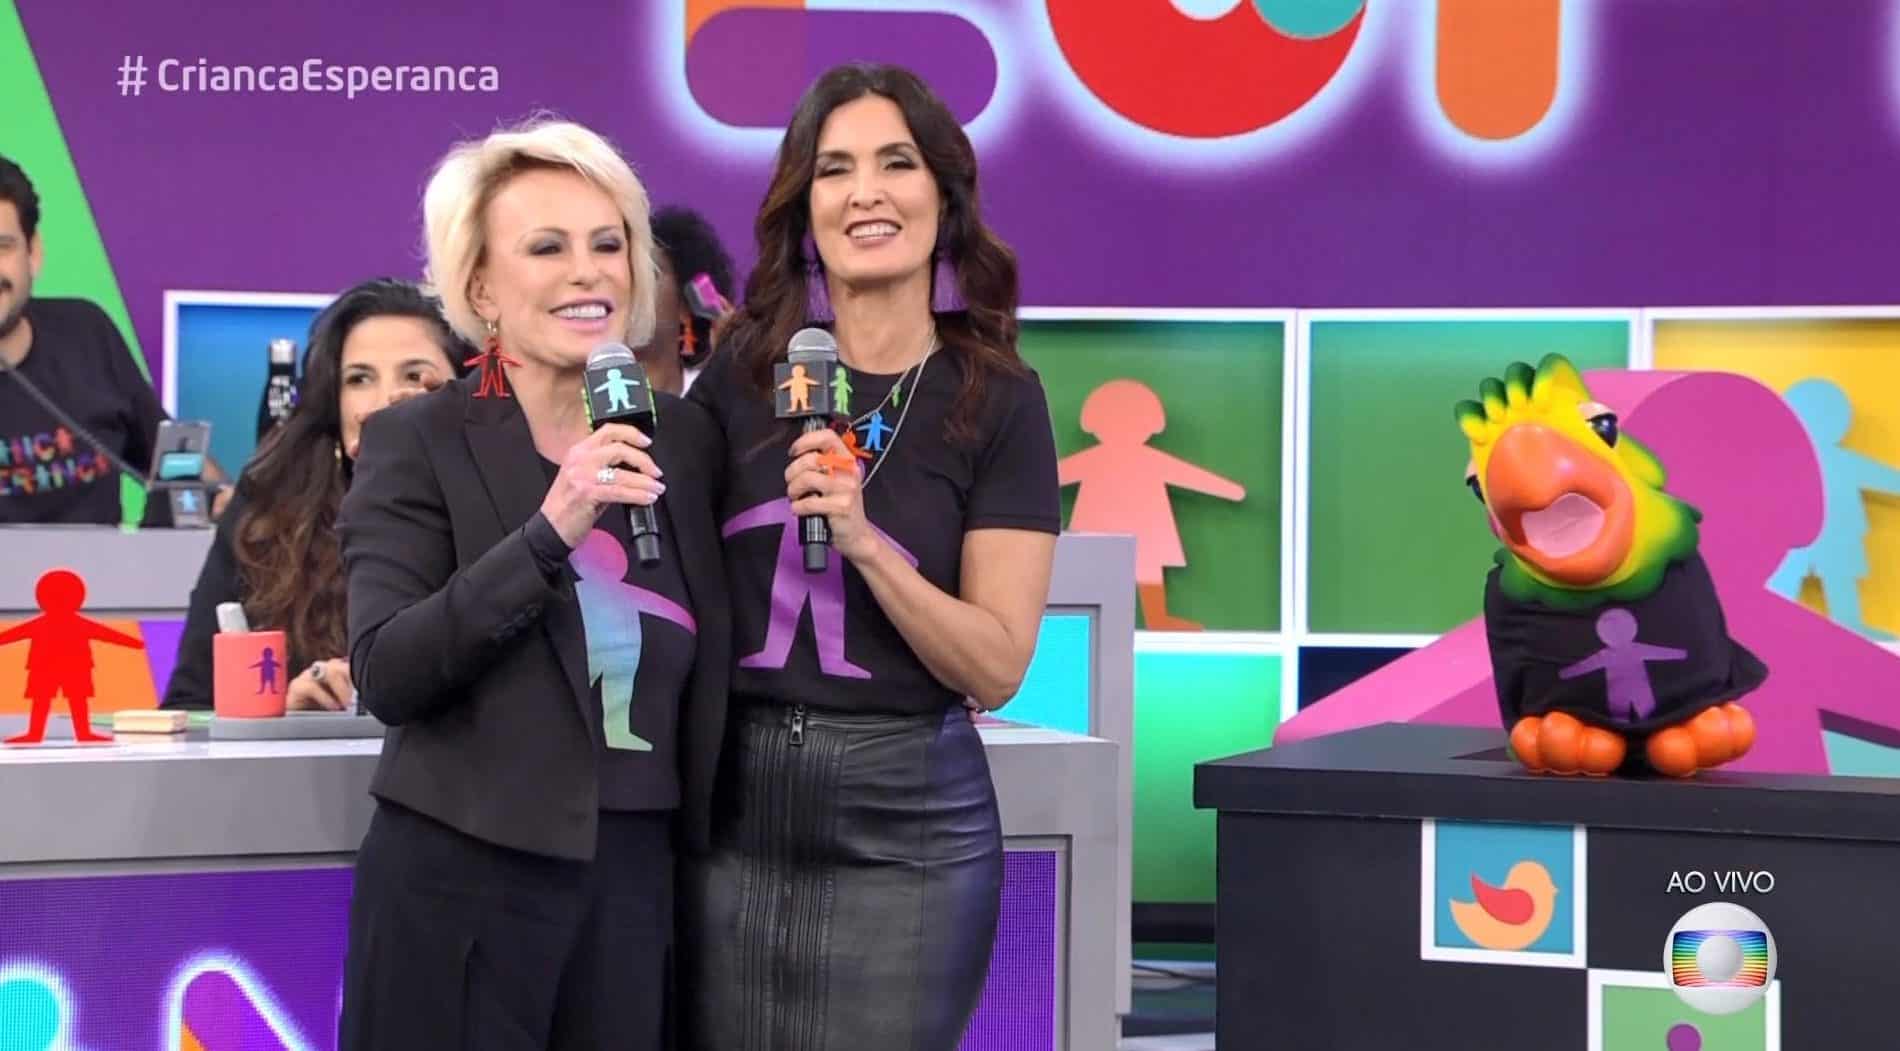 Sem doações do público, Globo apela às empresas para o Criança Esperança